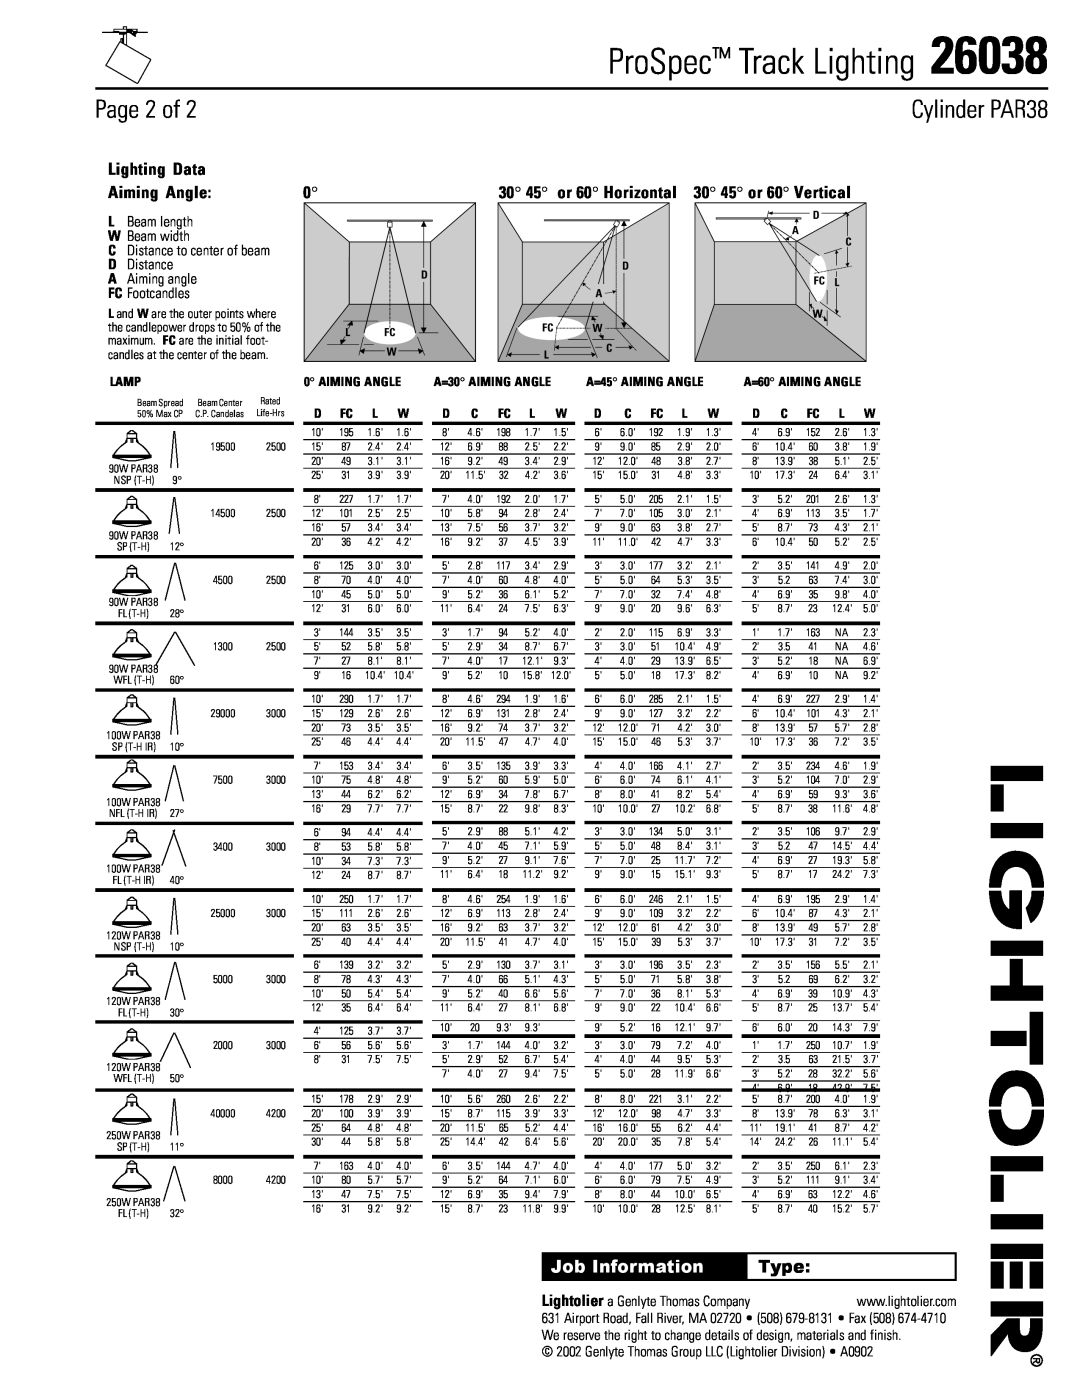 Lightolier 26038 Page 2 of, 30 45 or 60 Horizontal 30 45 or 60 Vertical, Type, ProSpec Track Lighting, Cylinder PAR38 